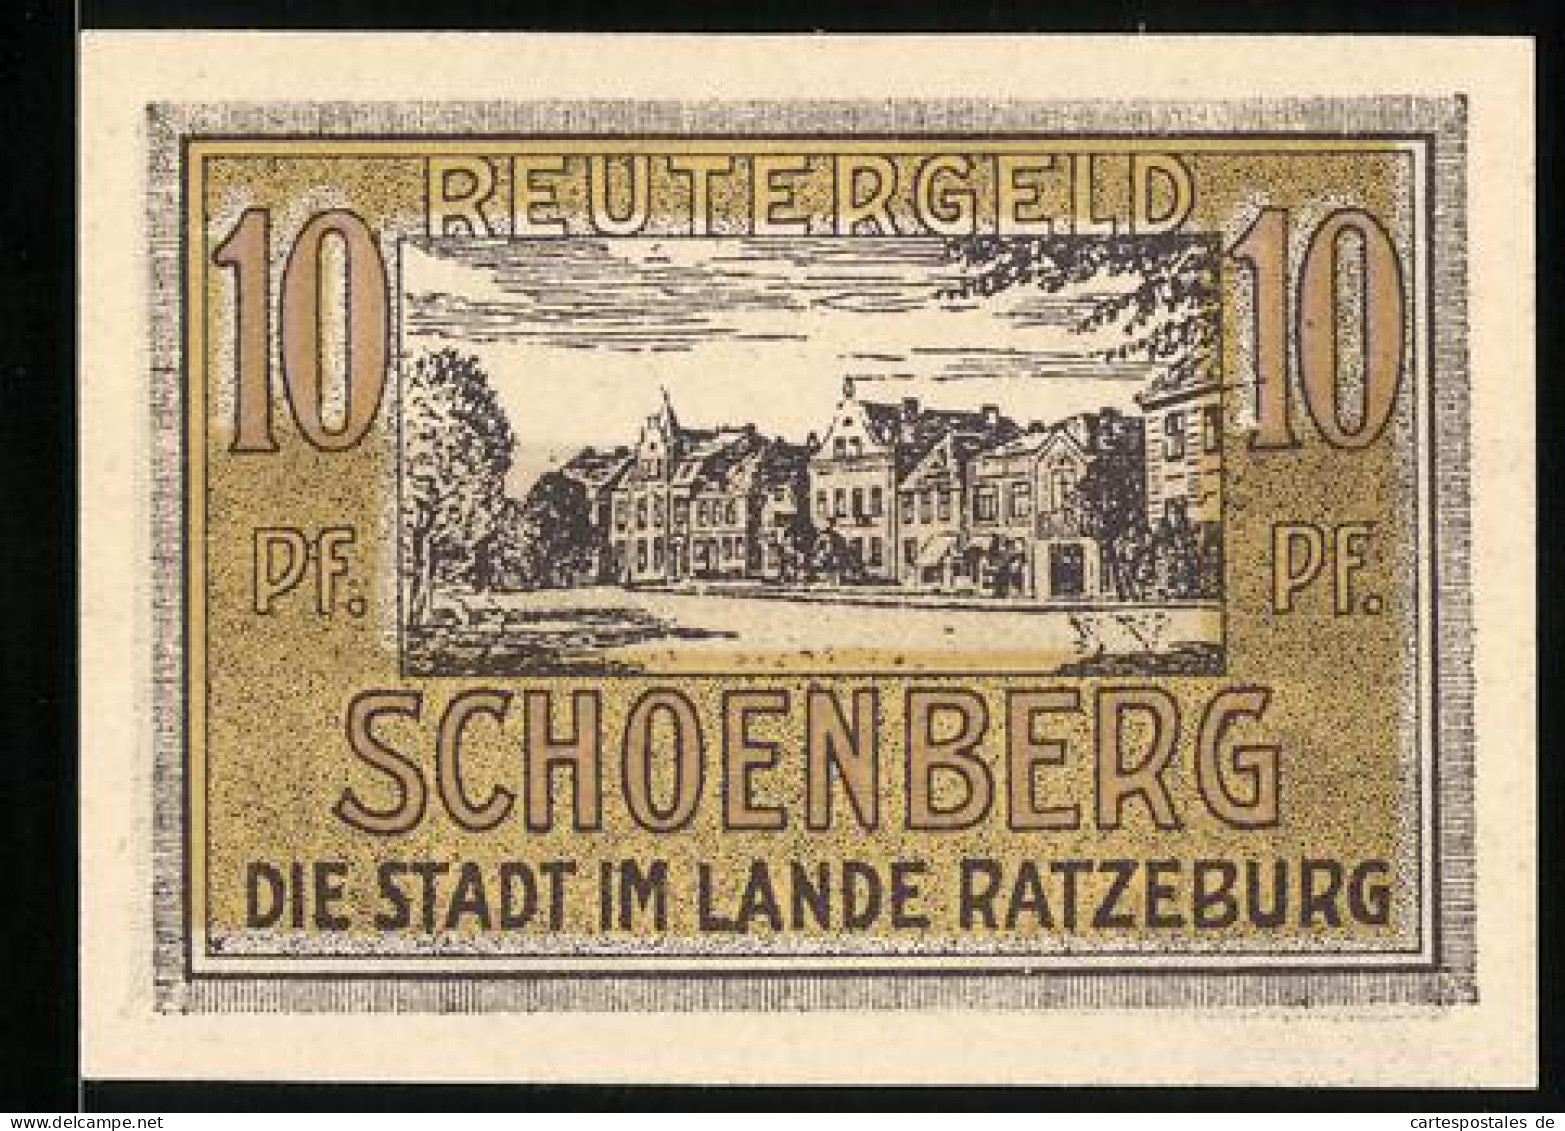 Notgeld Schönberg /Ratzeburg 1922, 10 Pfennig, Strassenpartie  - [11] Emissions Locales